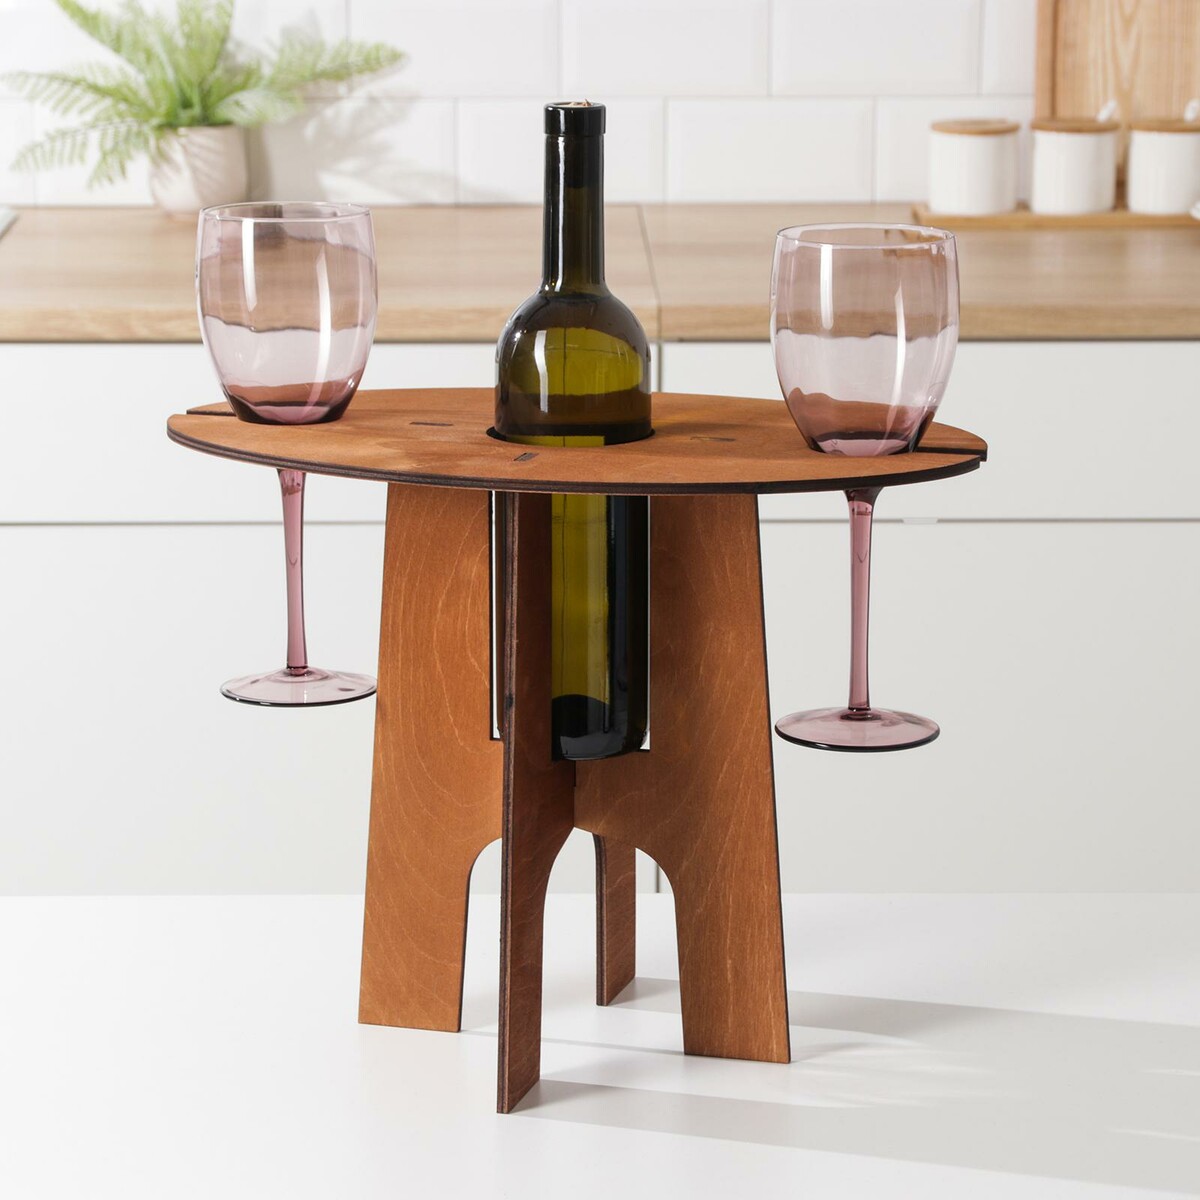 Столик-поднос для вина и двух бокалов, 40×25×30 см столик поднос для пива с менажницей и складными ножками береза